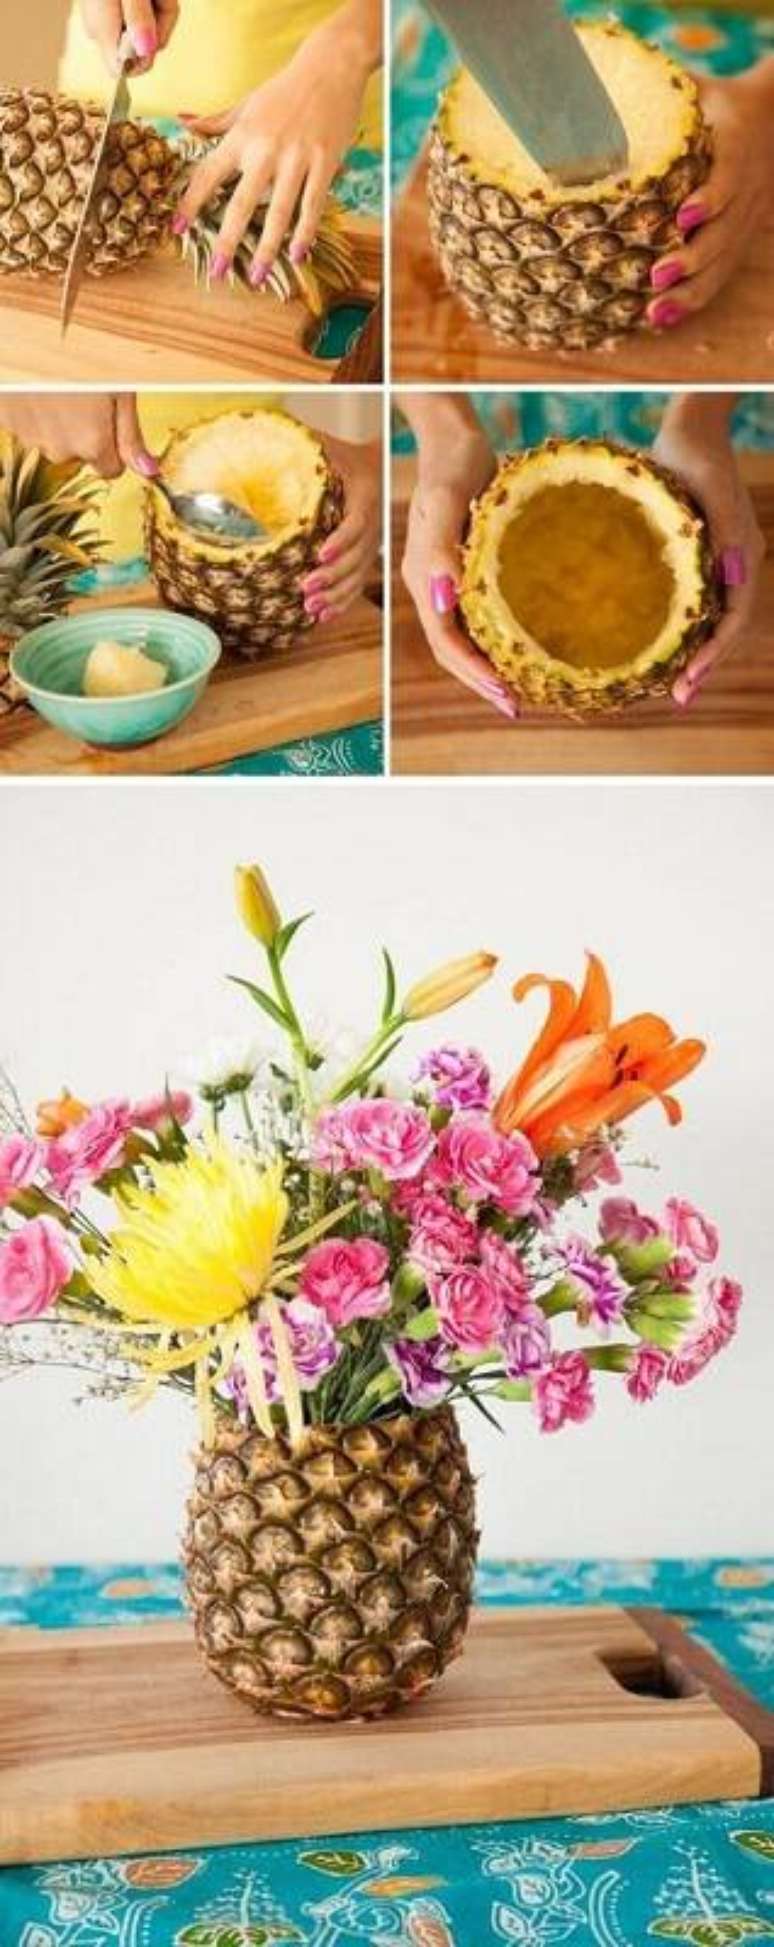 2. Tutorial fácil e criativo de centro de mesa com abacaxi e flores que pode ser uma linda decoração para festa